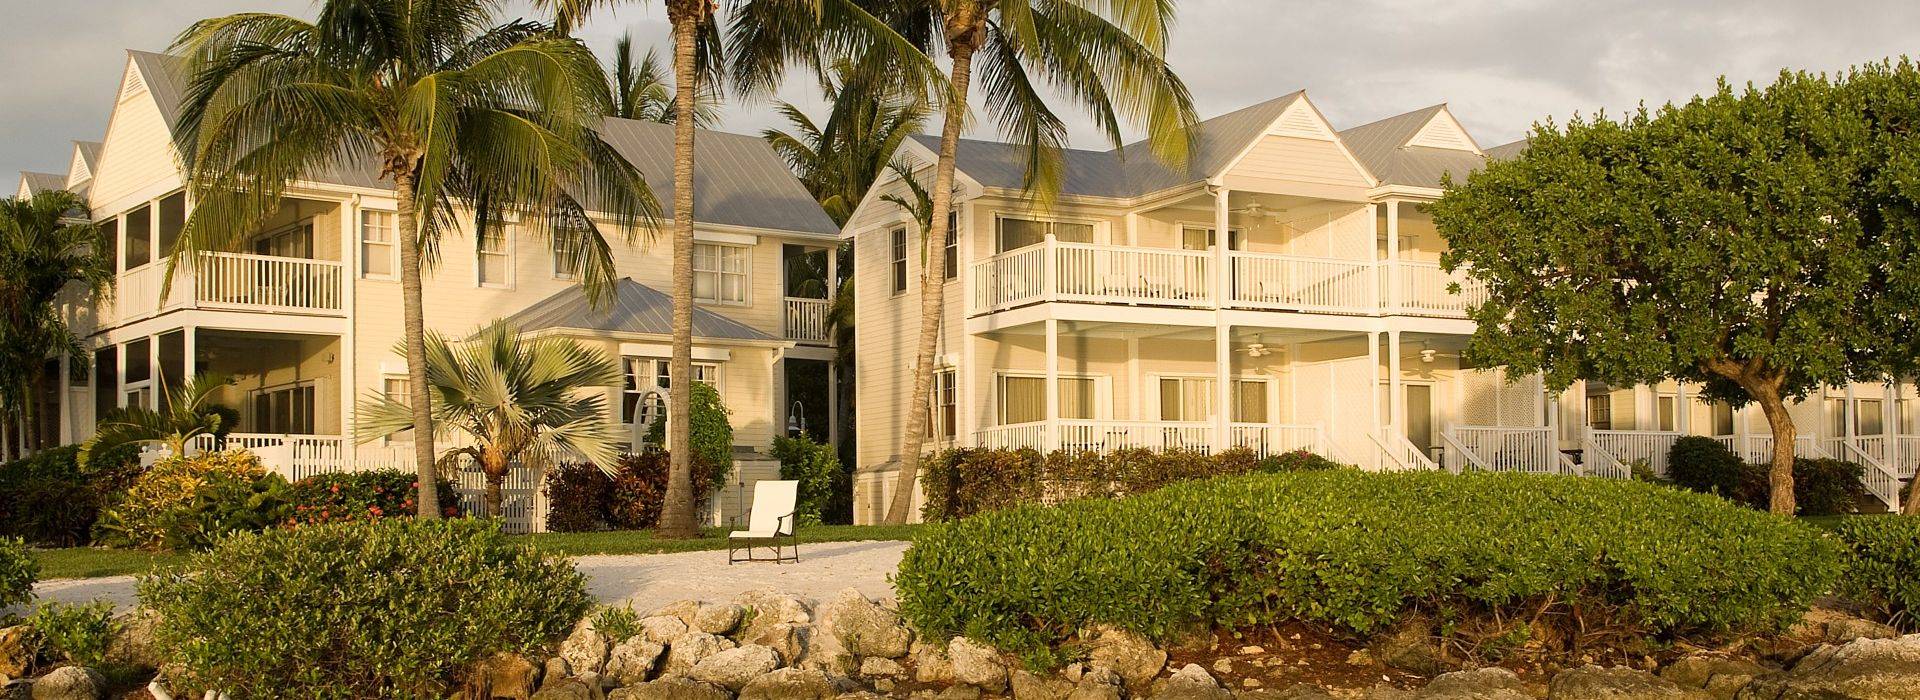 Hawk's Cay Resort, Marina & Villas  exterior.jpeg